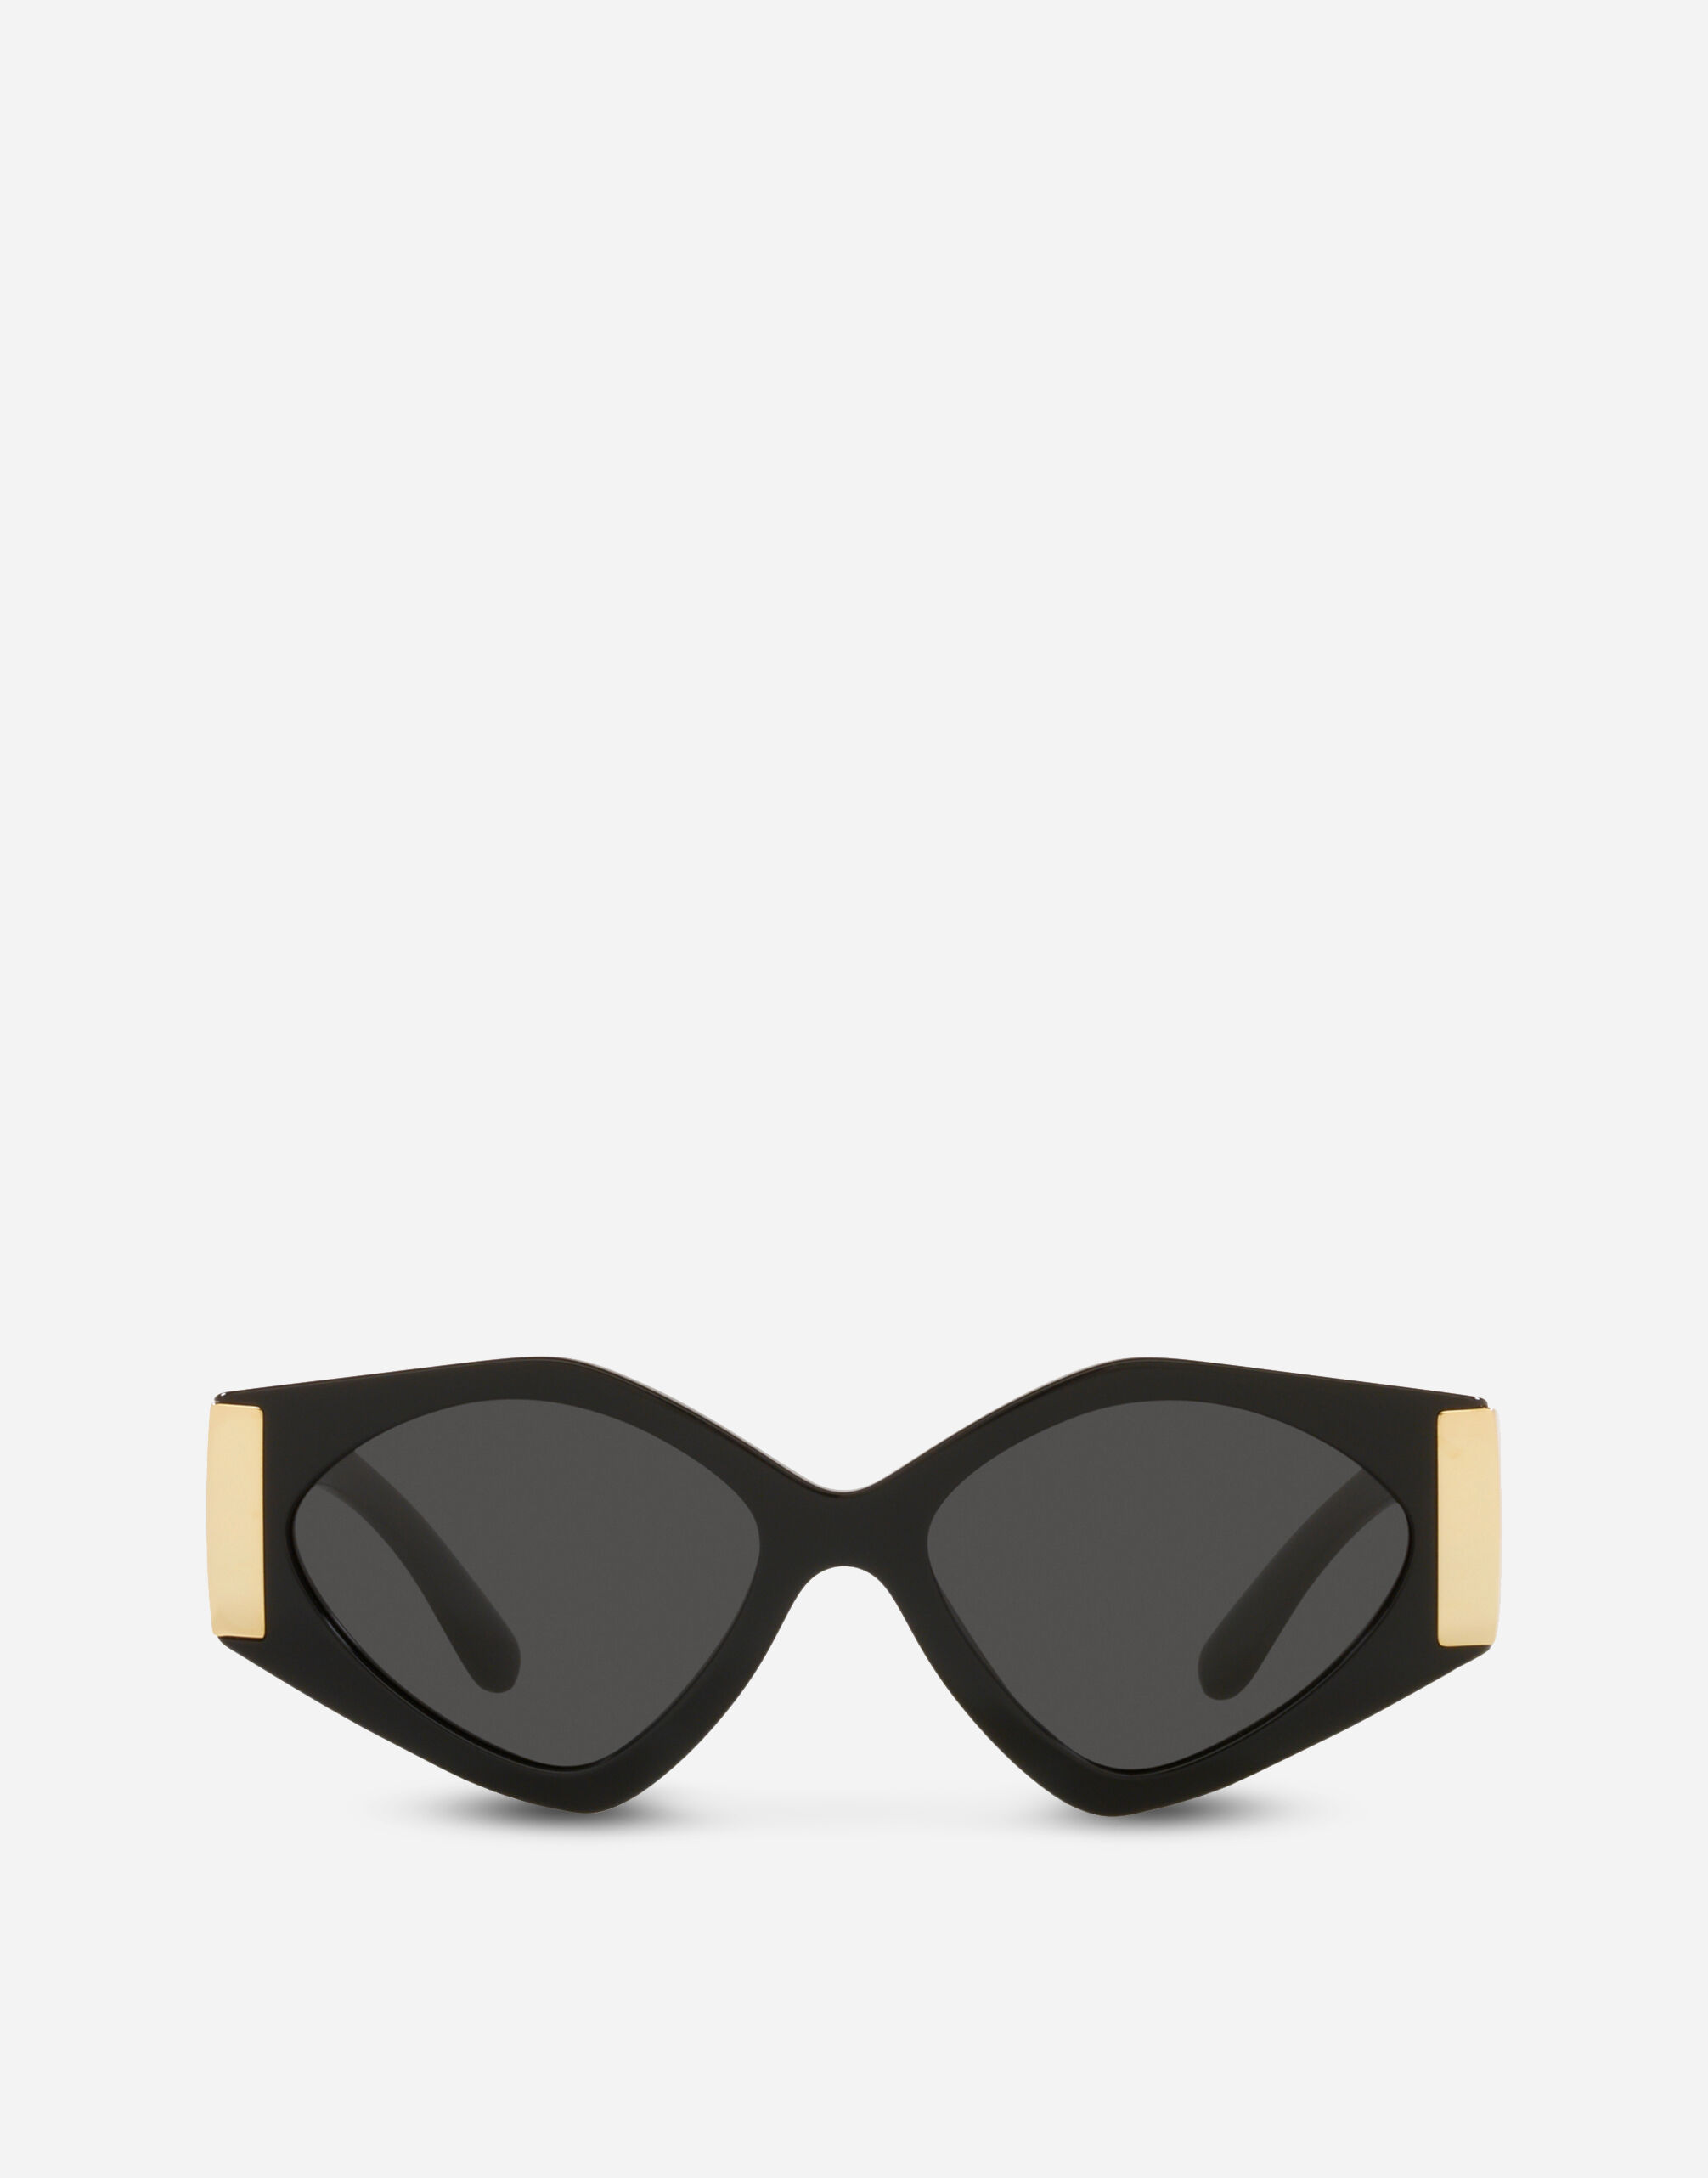 Mens Style Tips Finlay & Co Sunglasses | London Sock Company